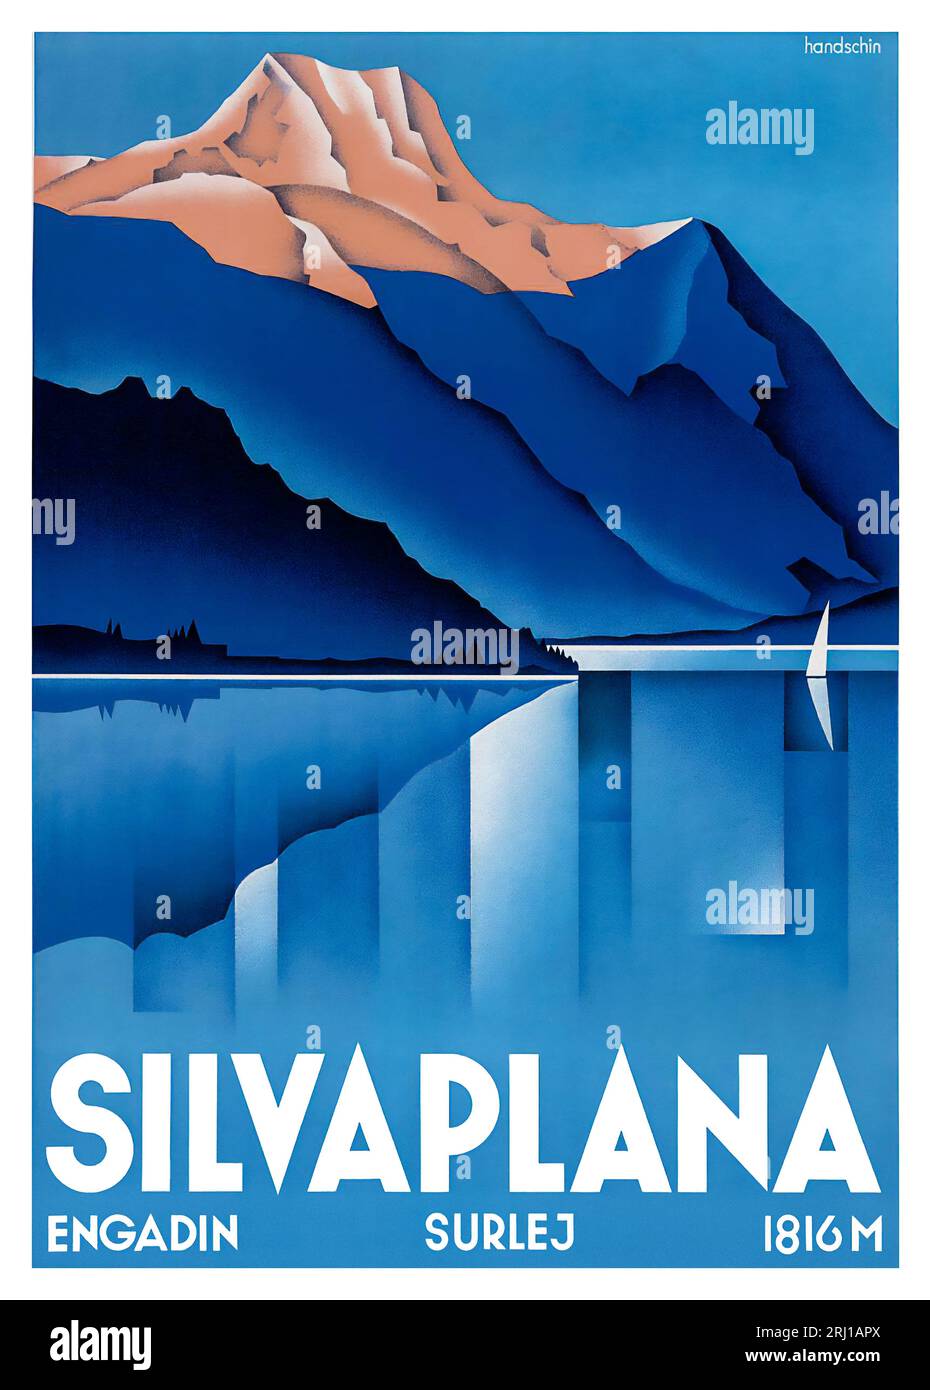 Rare affiche des années 1930 de Hans Johannes Handschin pour Silvaplana dans l'Engadin, la région de St.Moritz, l'une des plus belles affiches Art déco suisses. Banque D'Images